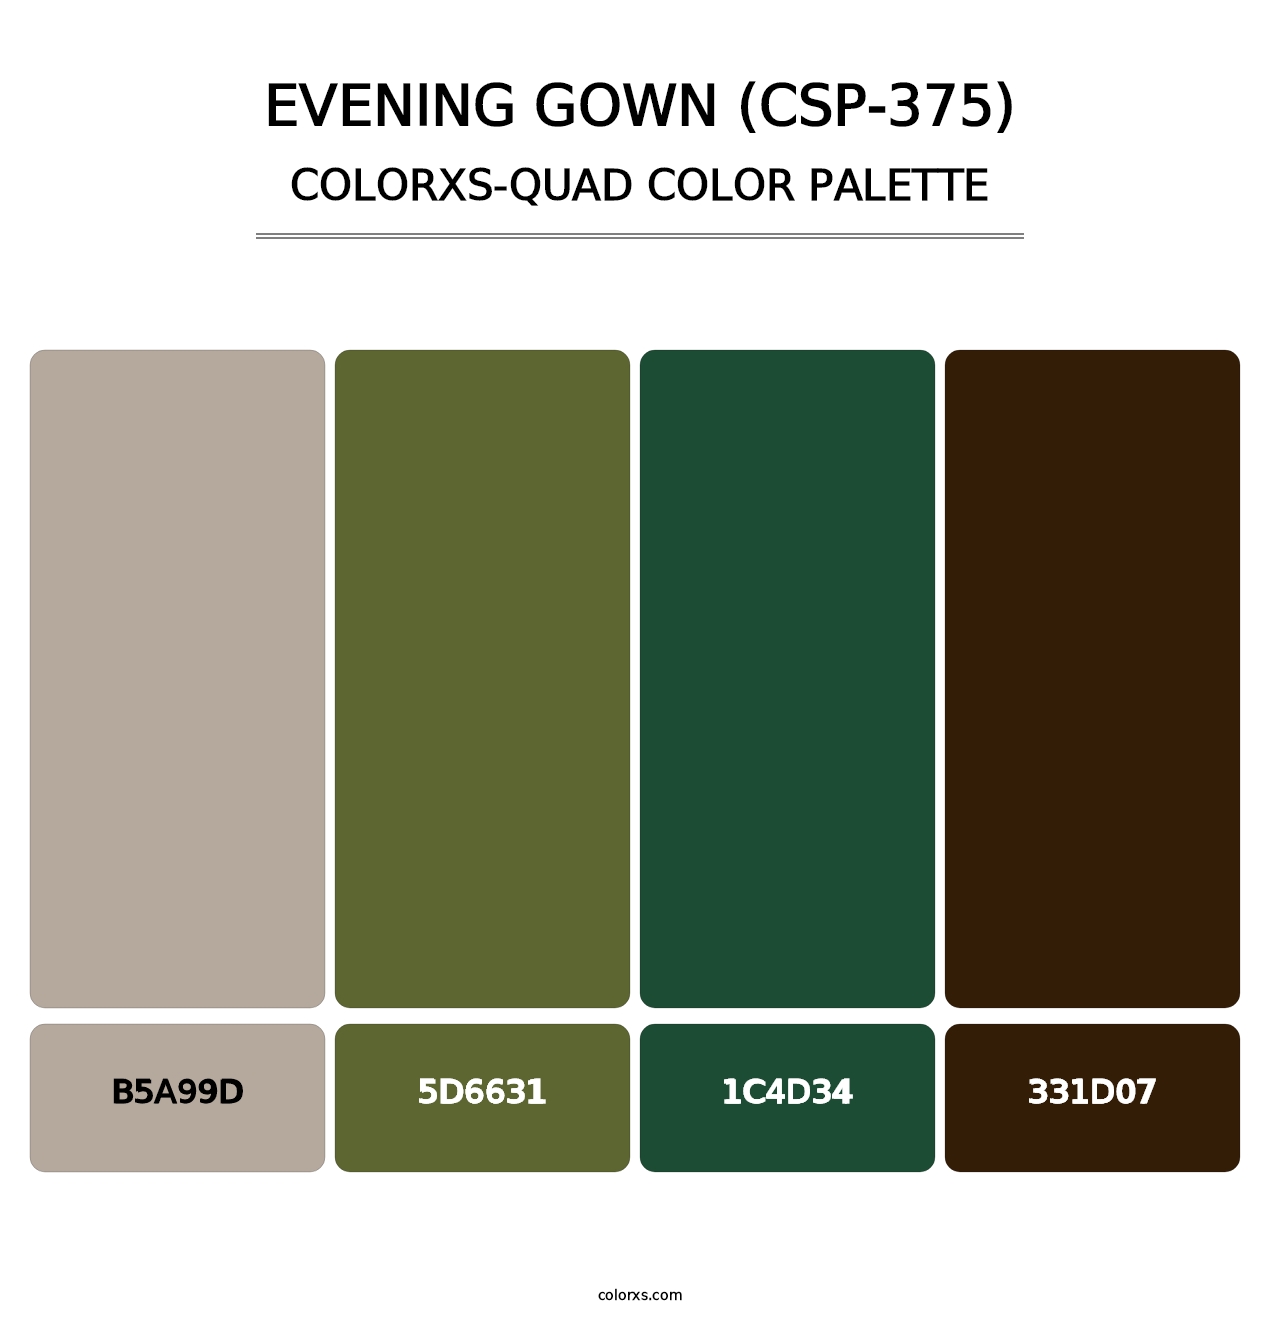 Evening Gown (CSP-375) - Colorxs Quad Palette